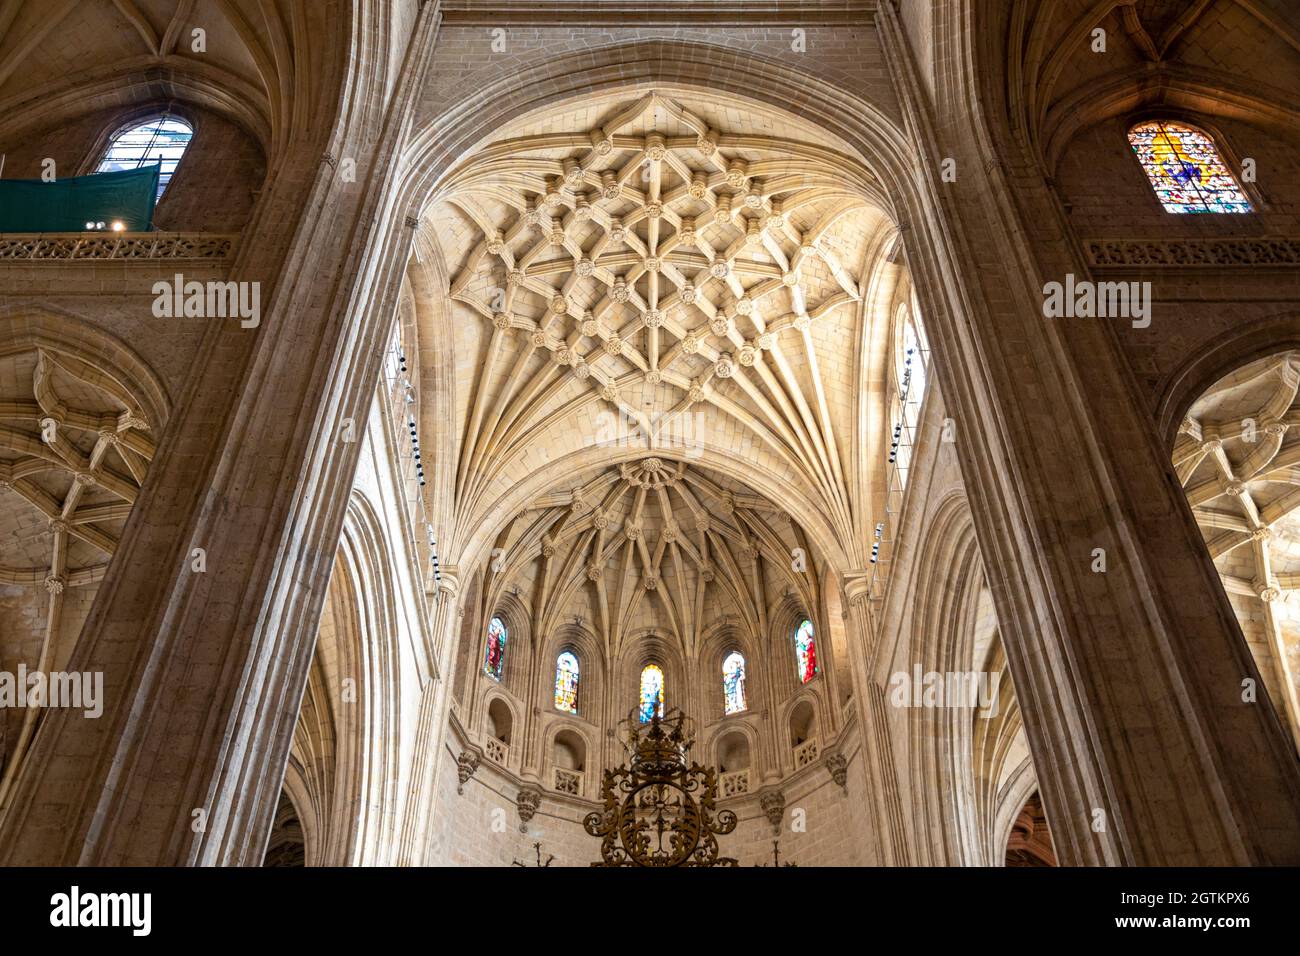 Ségovie, Espagne. Voûtes côtelées gothiques et traversée de la Renaissance à l'intérieur de la cathédrale de Ségovie Banque D'Images